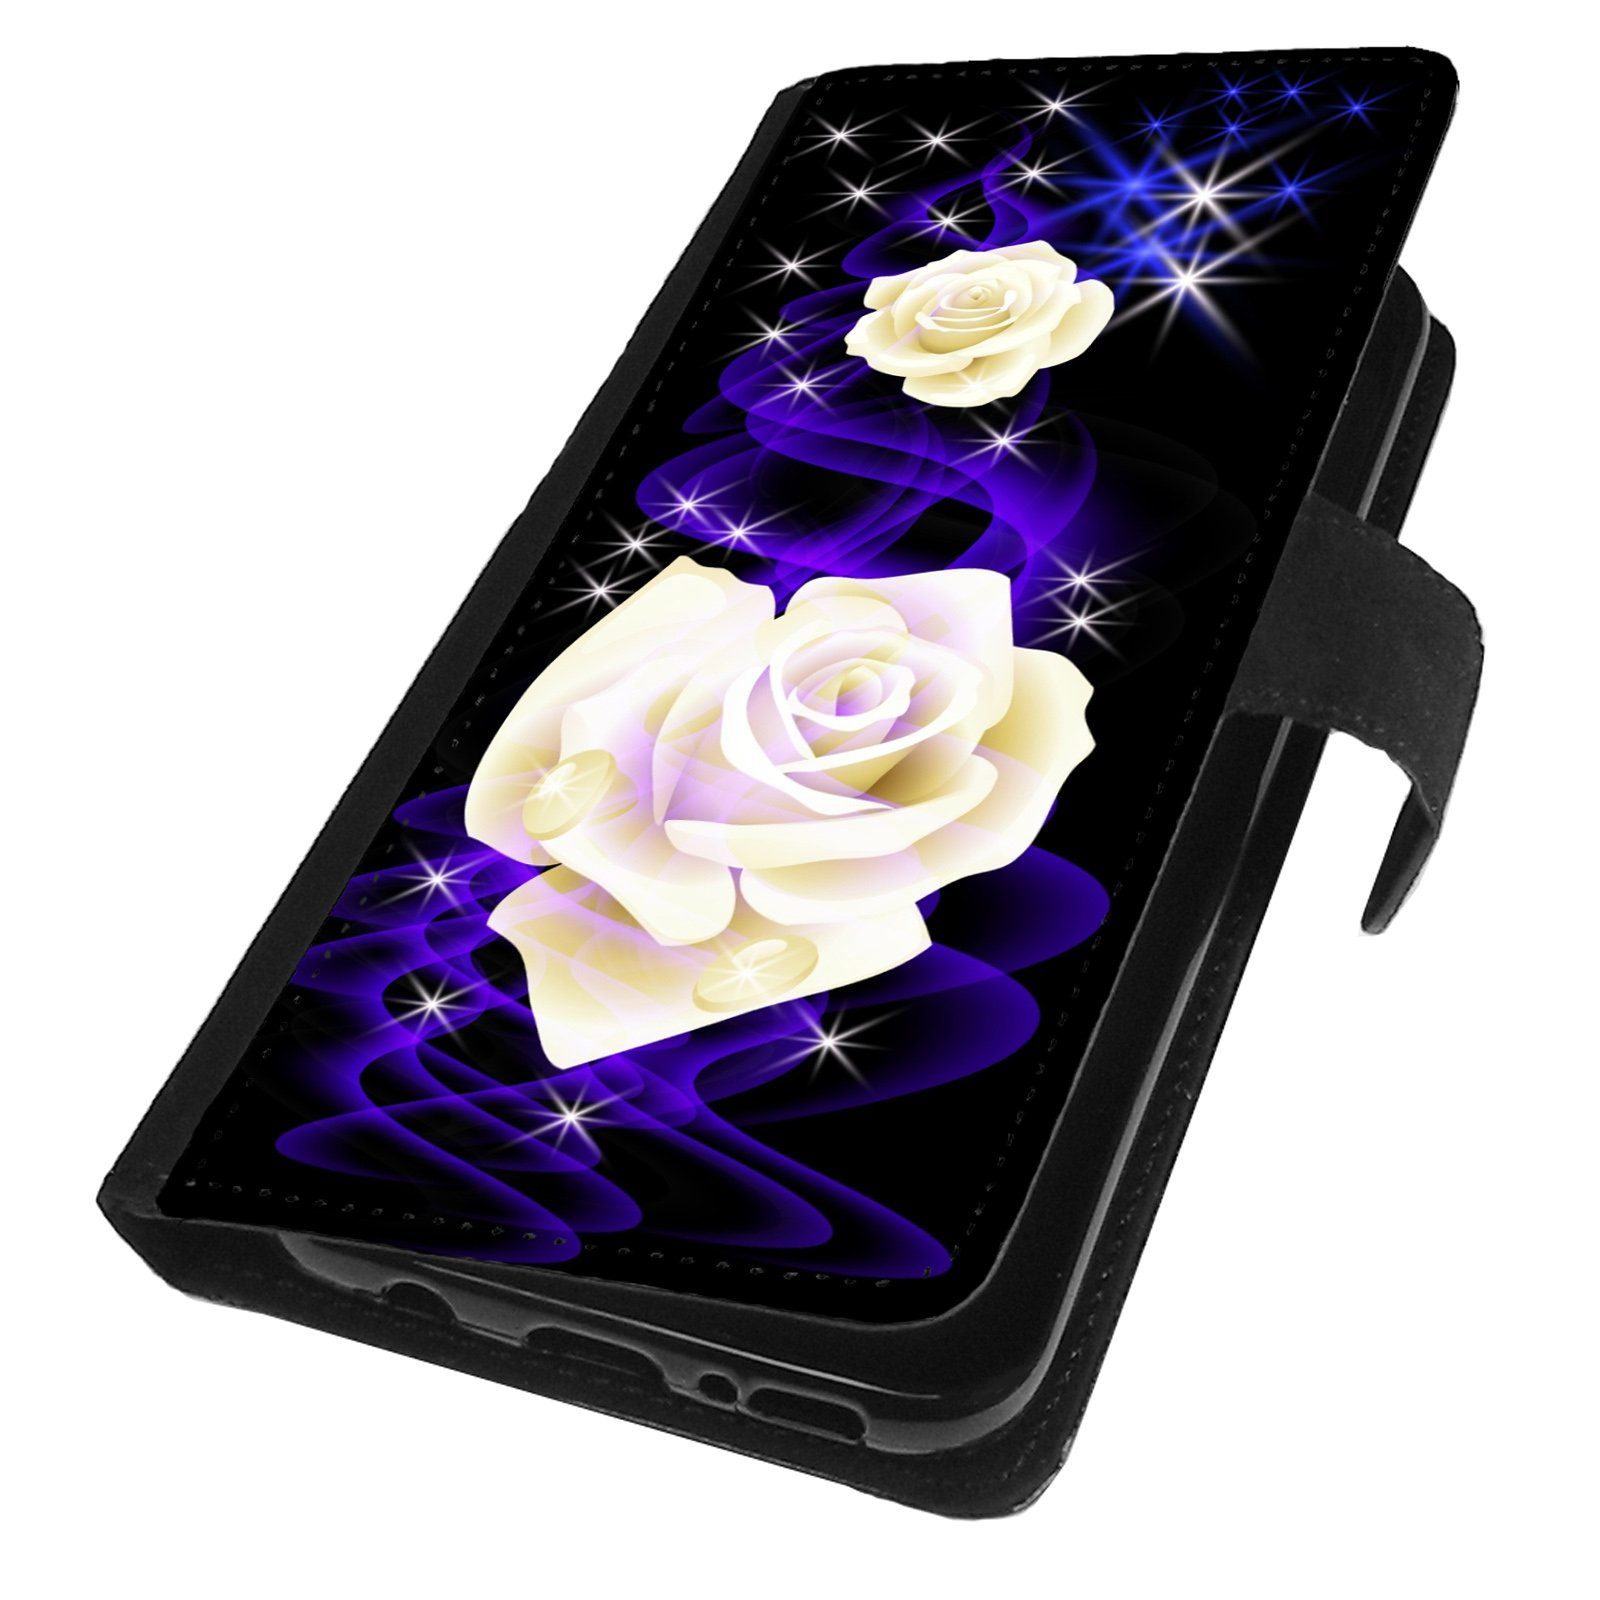 Traumhuelle Handyhülle MOTIV 298 Weiße Rose Schutz Hülle für Samsung Galaxy Handy, Handytasche Schutzhülle Flip Case Klapp Etui Cover Silikon